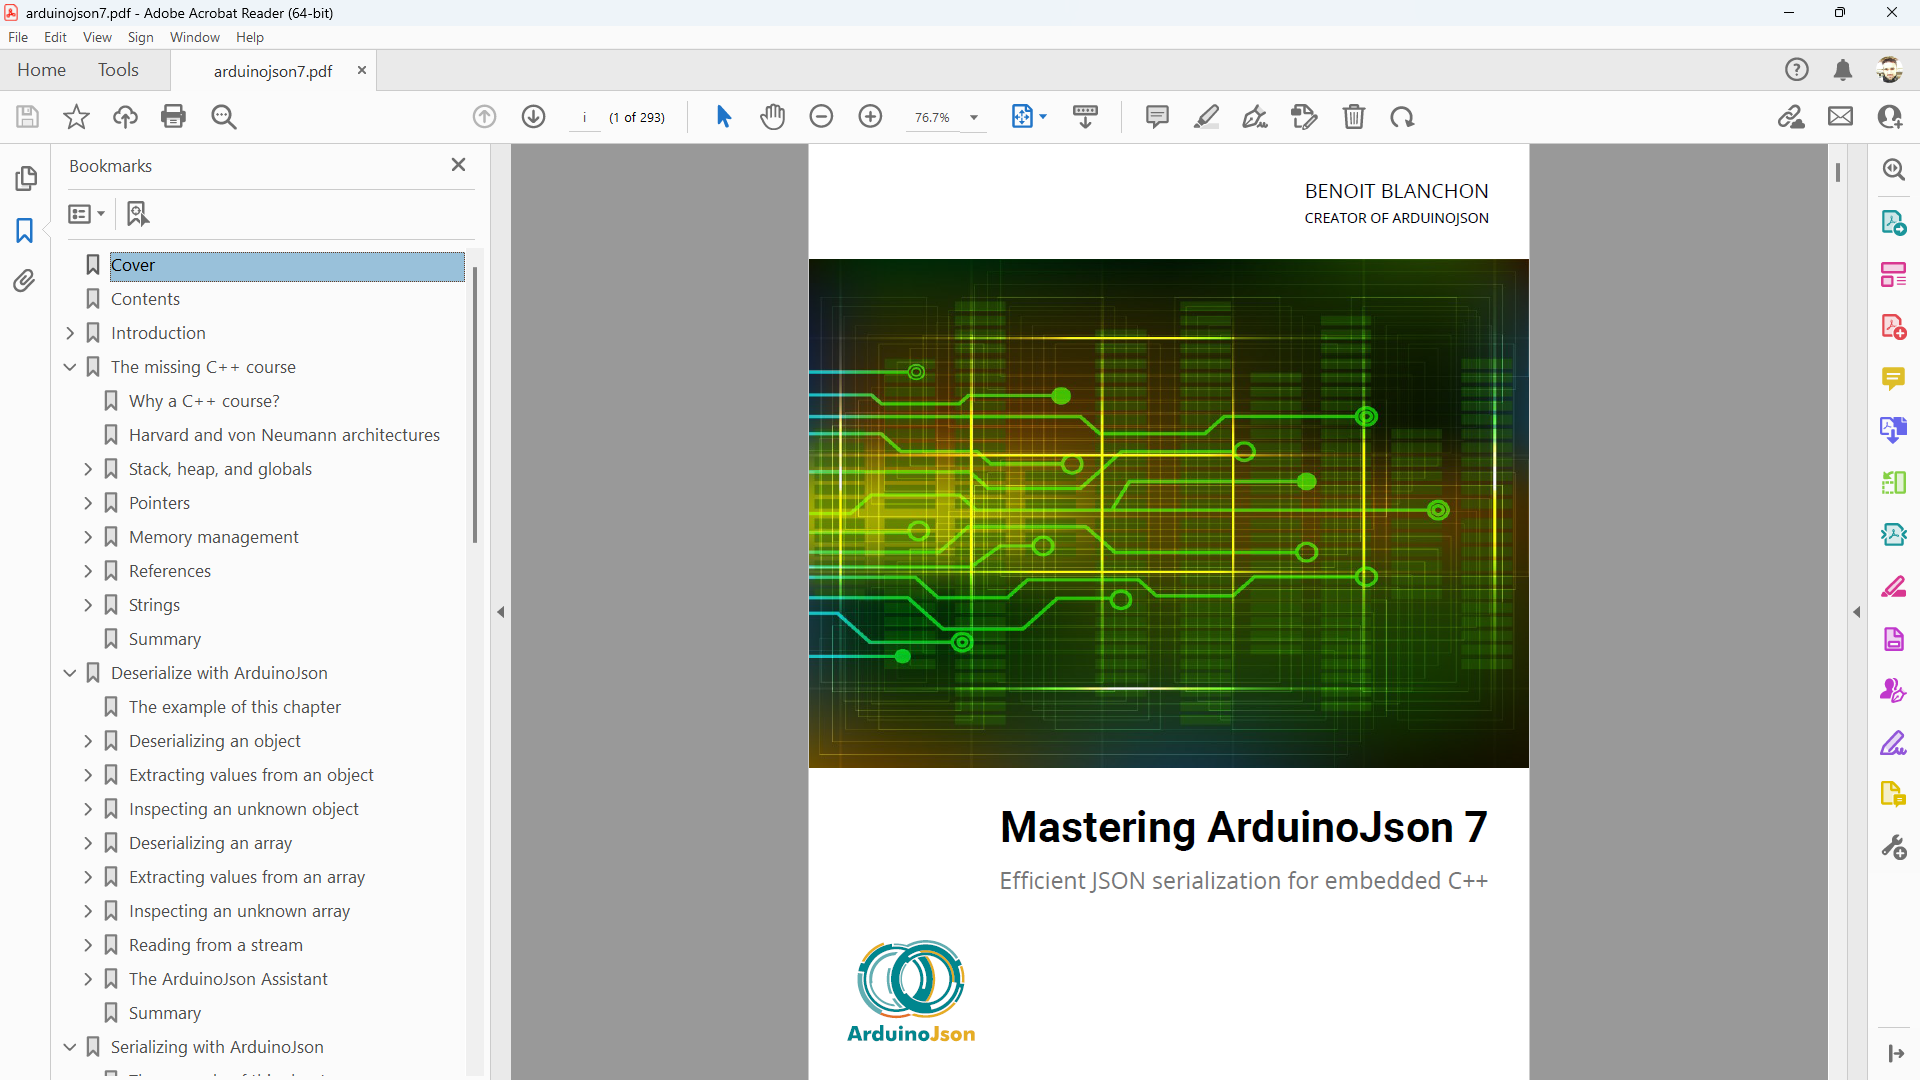 Mastering ArduinoJson 7 in Acrobat Reader